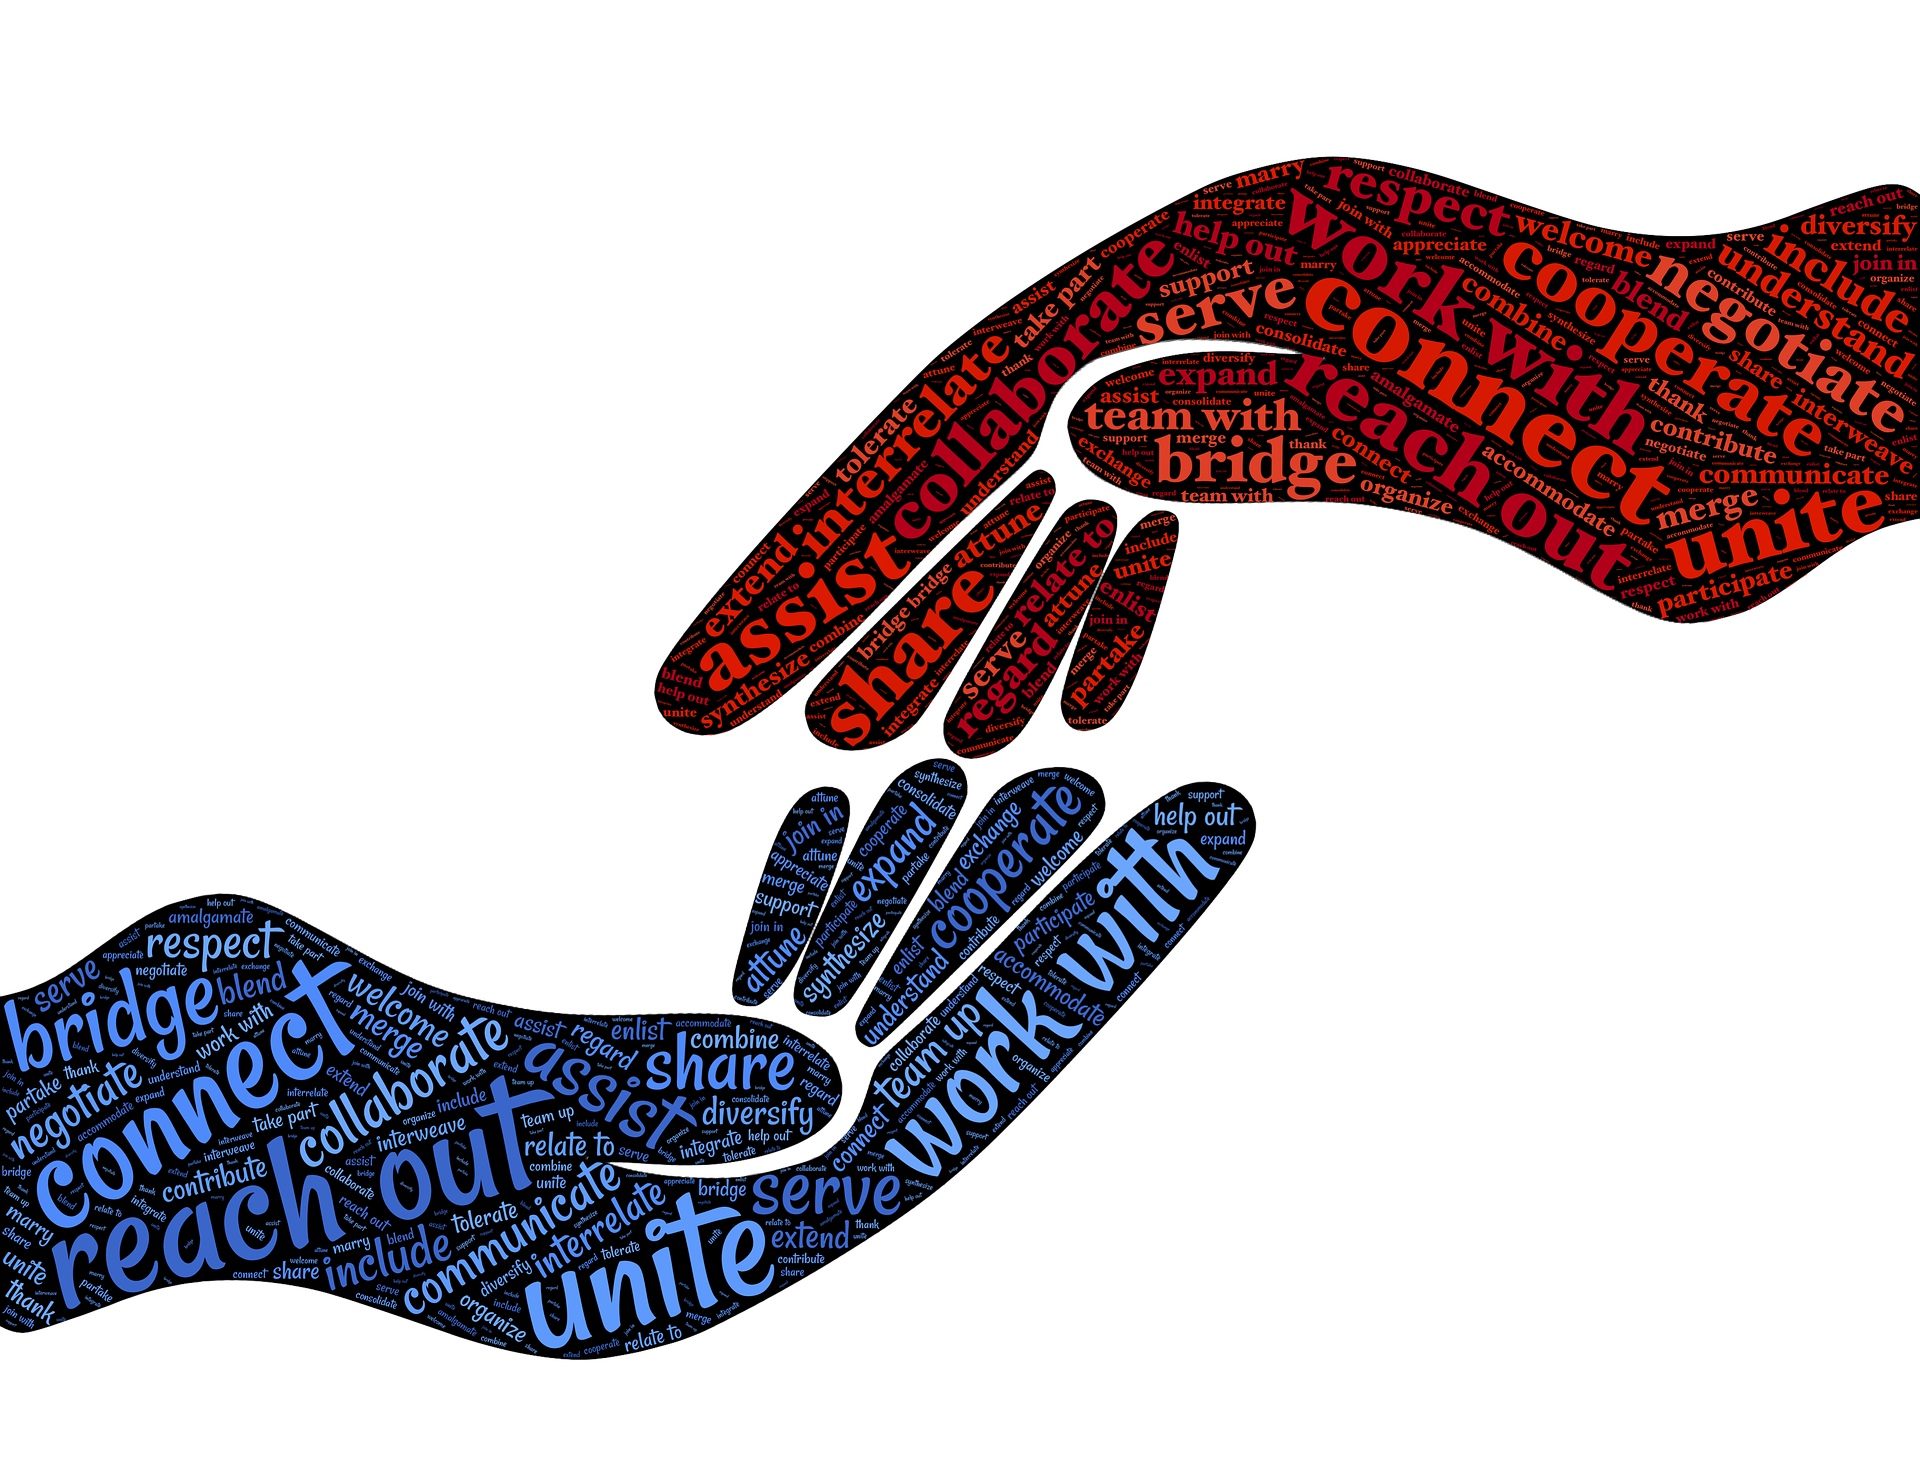 Deux mains sur le point de se serrer. Des nuages de mots forment les mains comme "connect", "unite", "work with", "assist", "share" etc.